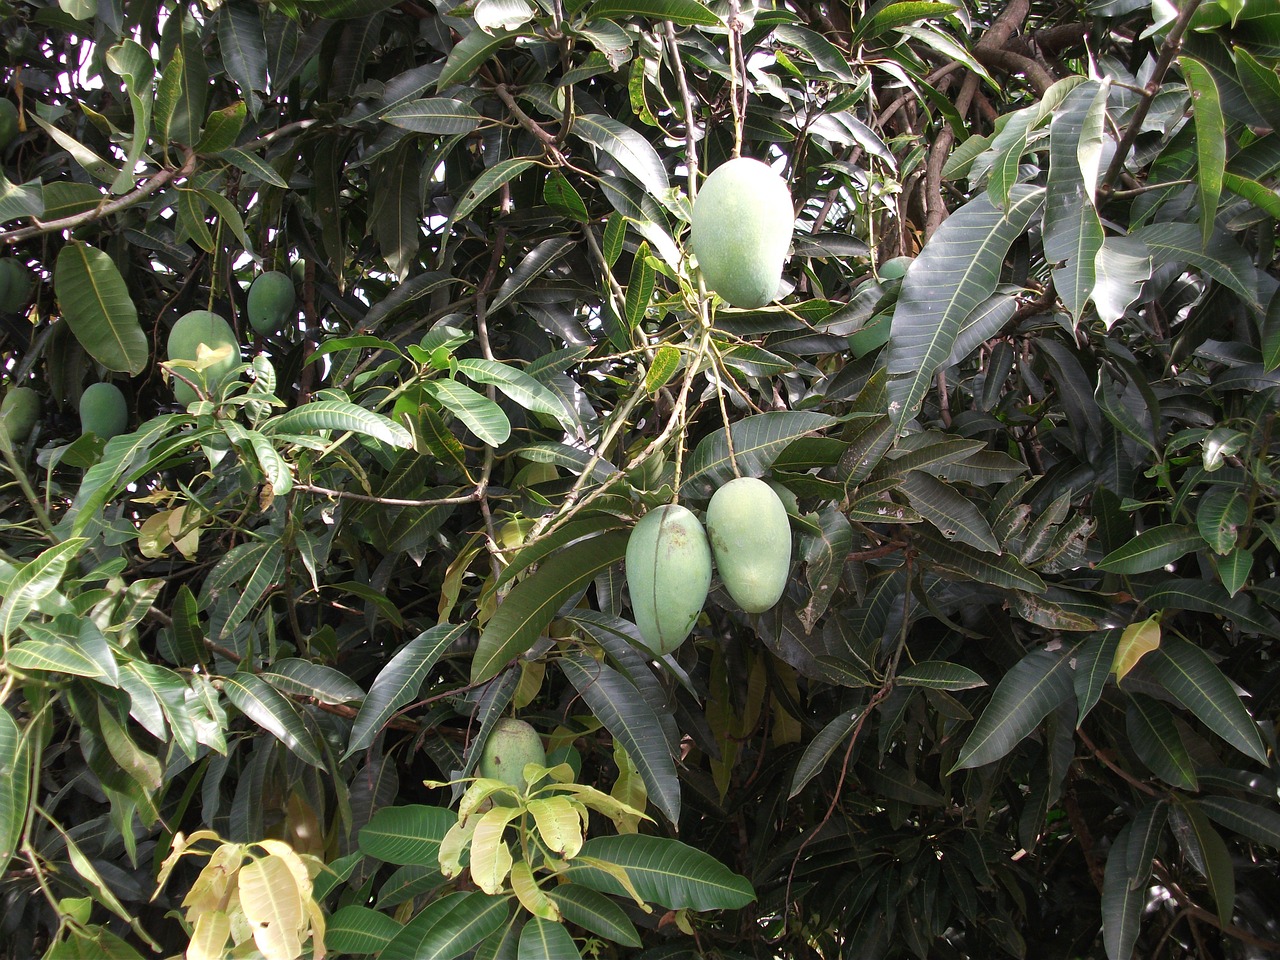 Floribbean Mango Salsa